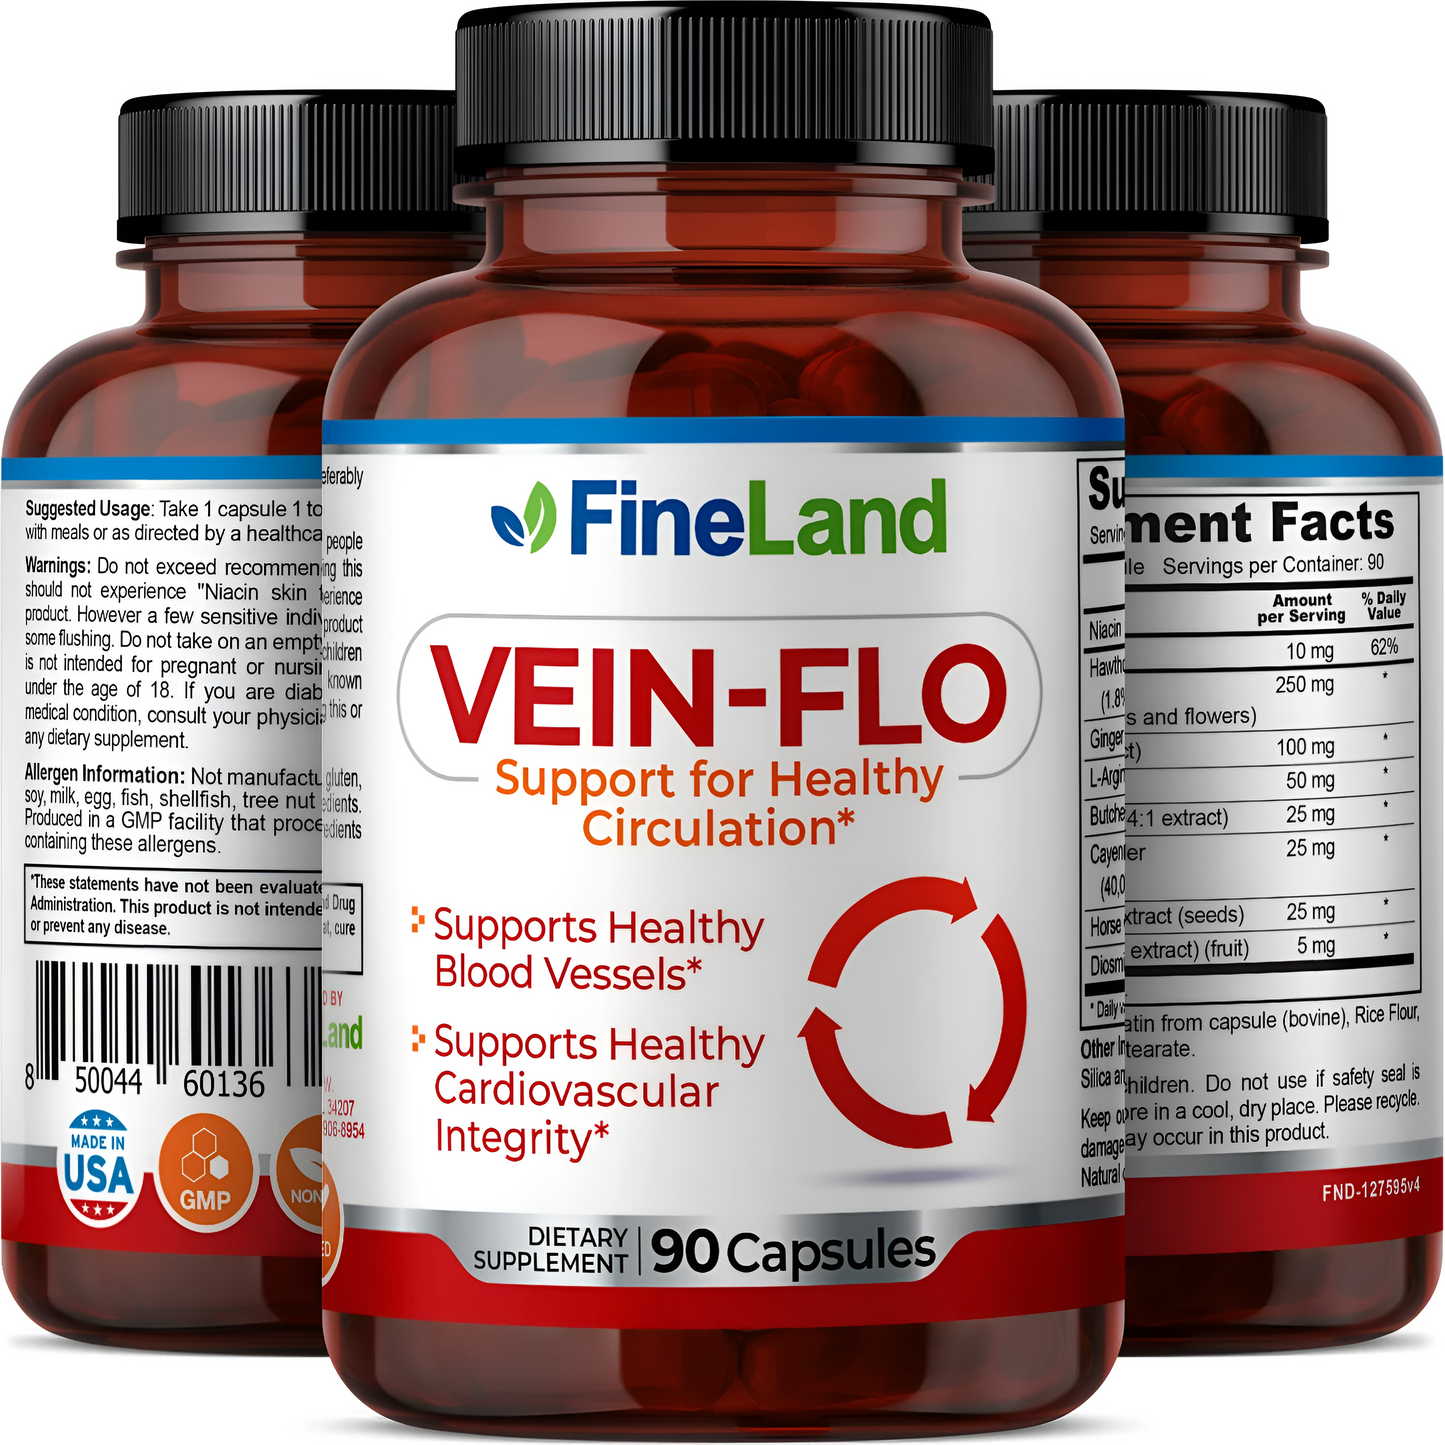 Vein-Flo apoyo para una circulación saludable- Fineland , 90 capsulas